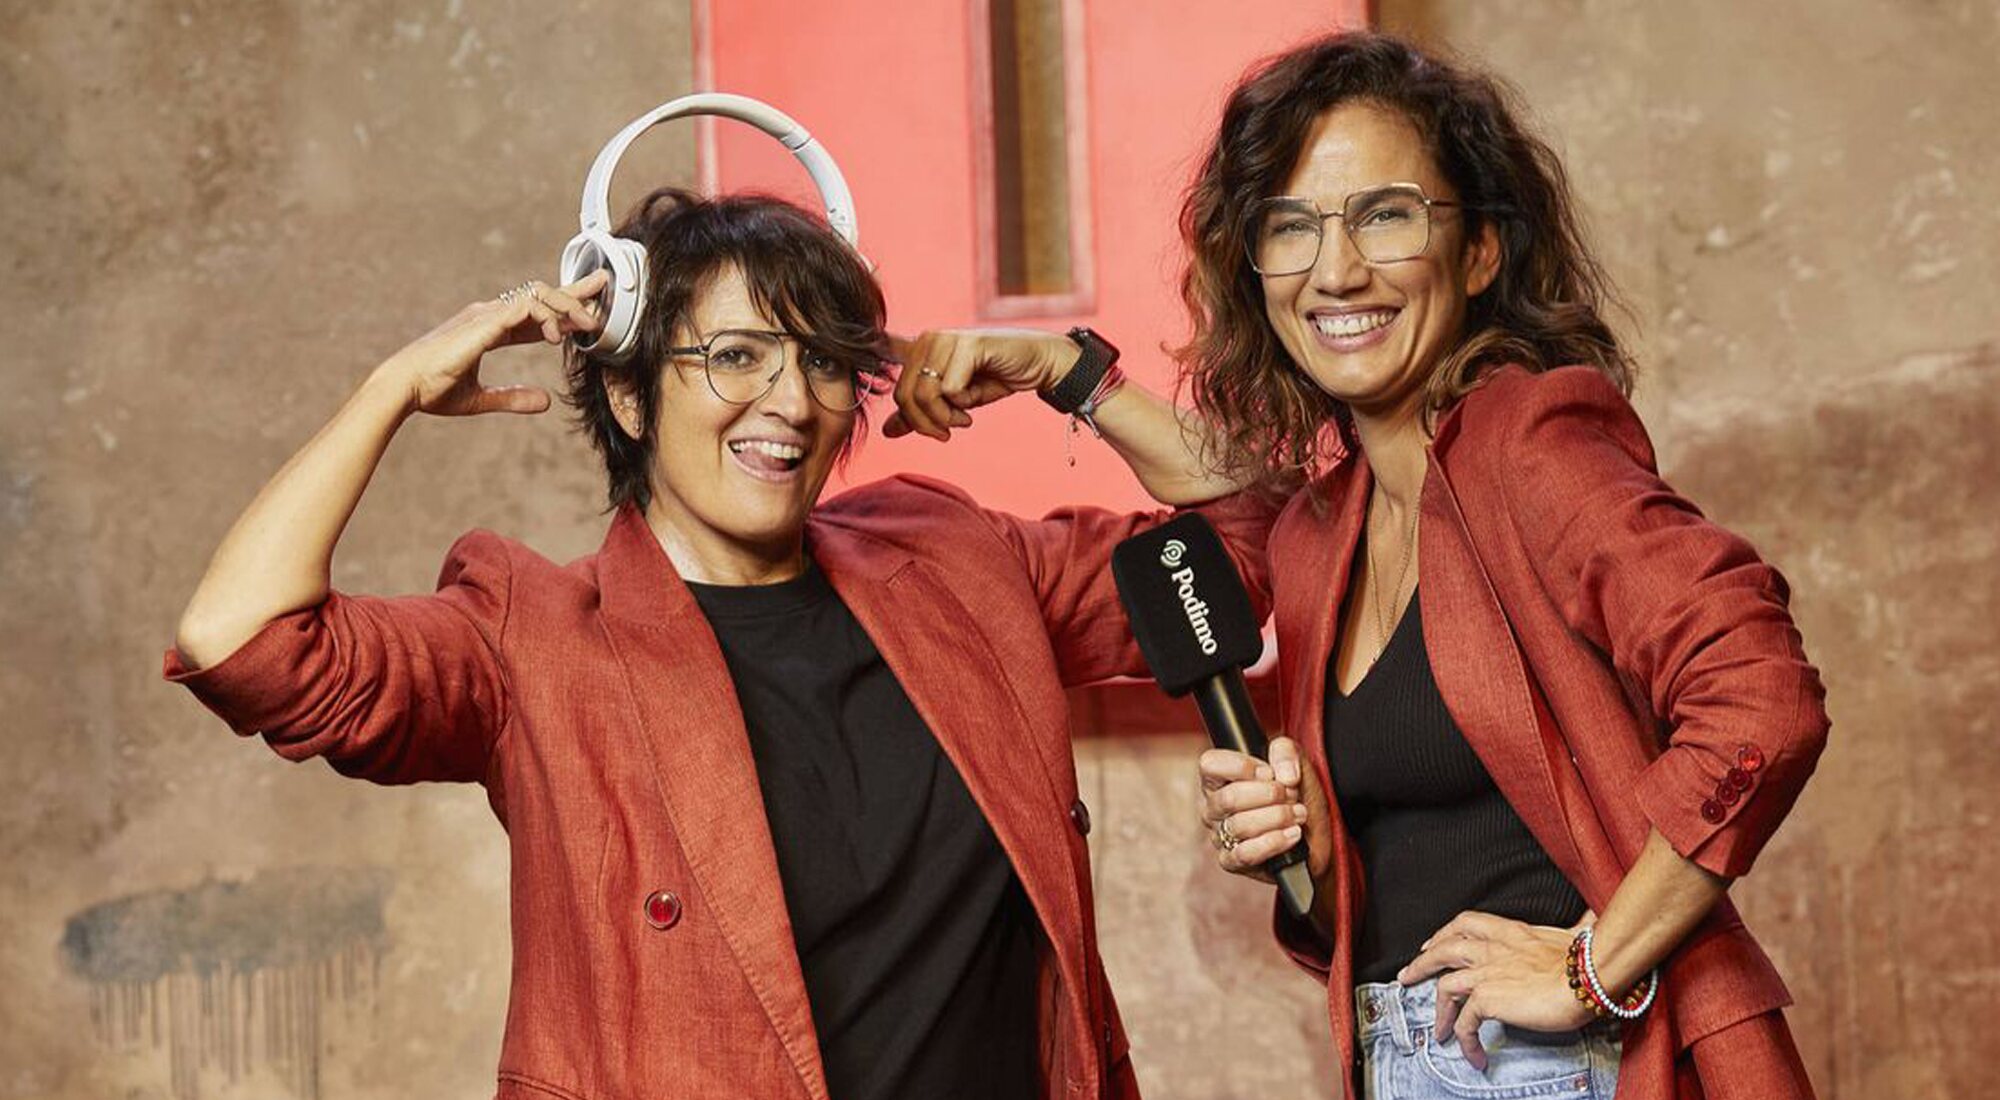 Silvia Abril y Toni Acosta presentan "Las del grupo"